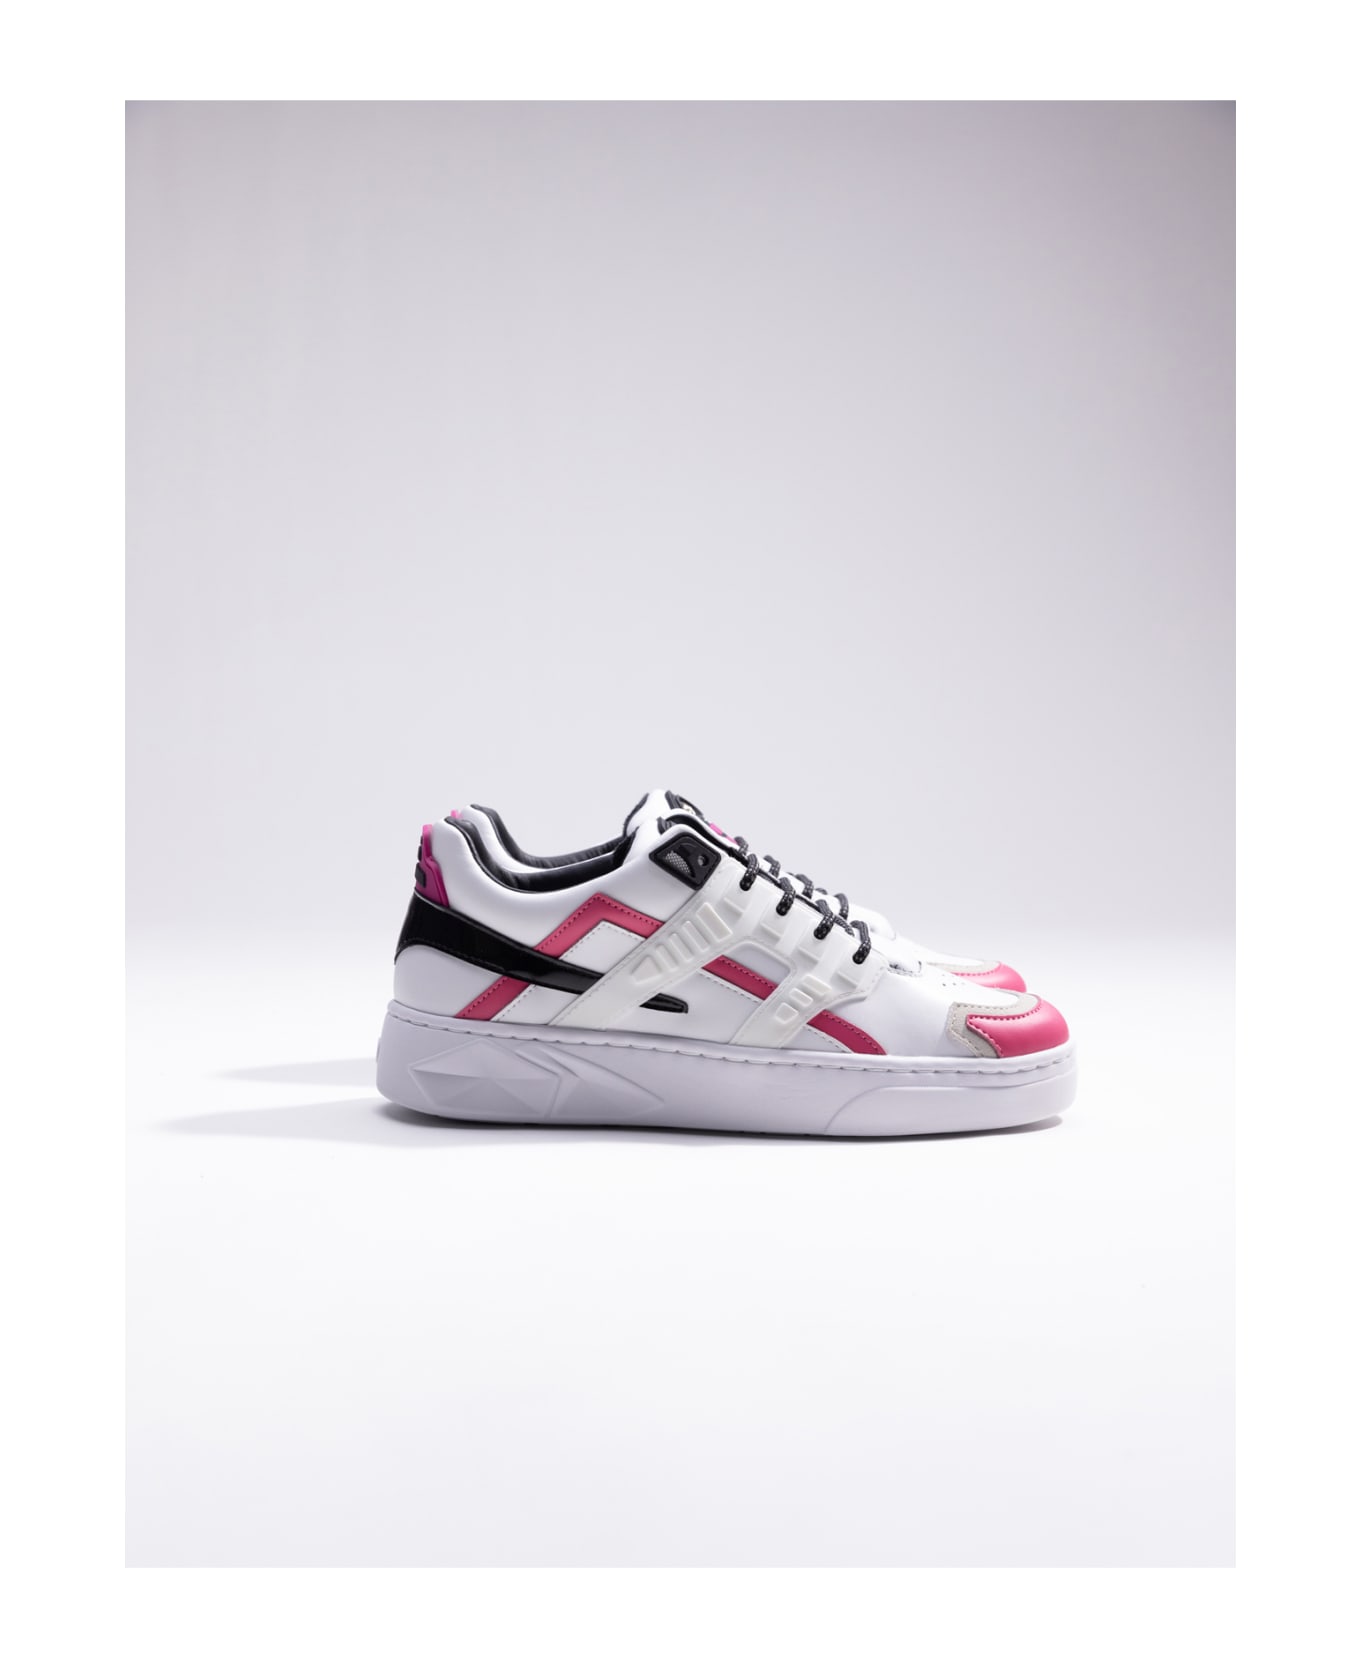 Hide&Jack Low Top Sneaker - Mini Silverstone Pink White